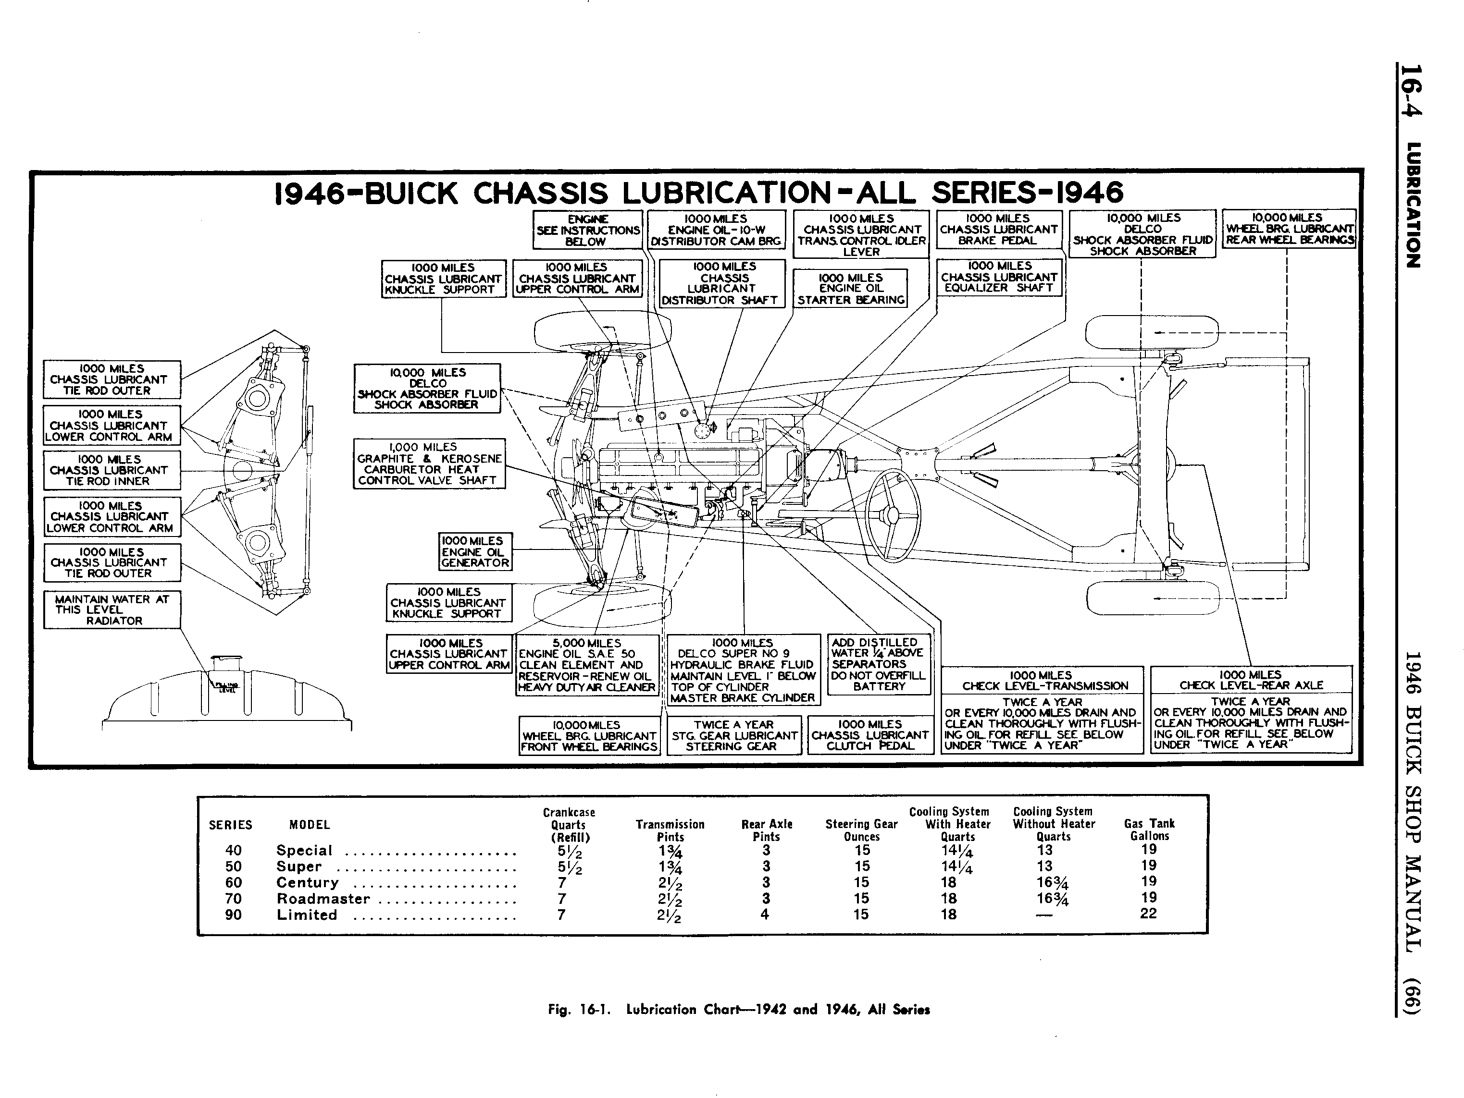 n_15 1946 Buick Shop Manual - Lubrication-004-004.jpg